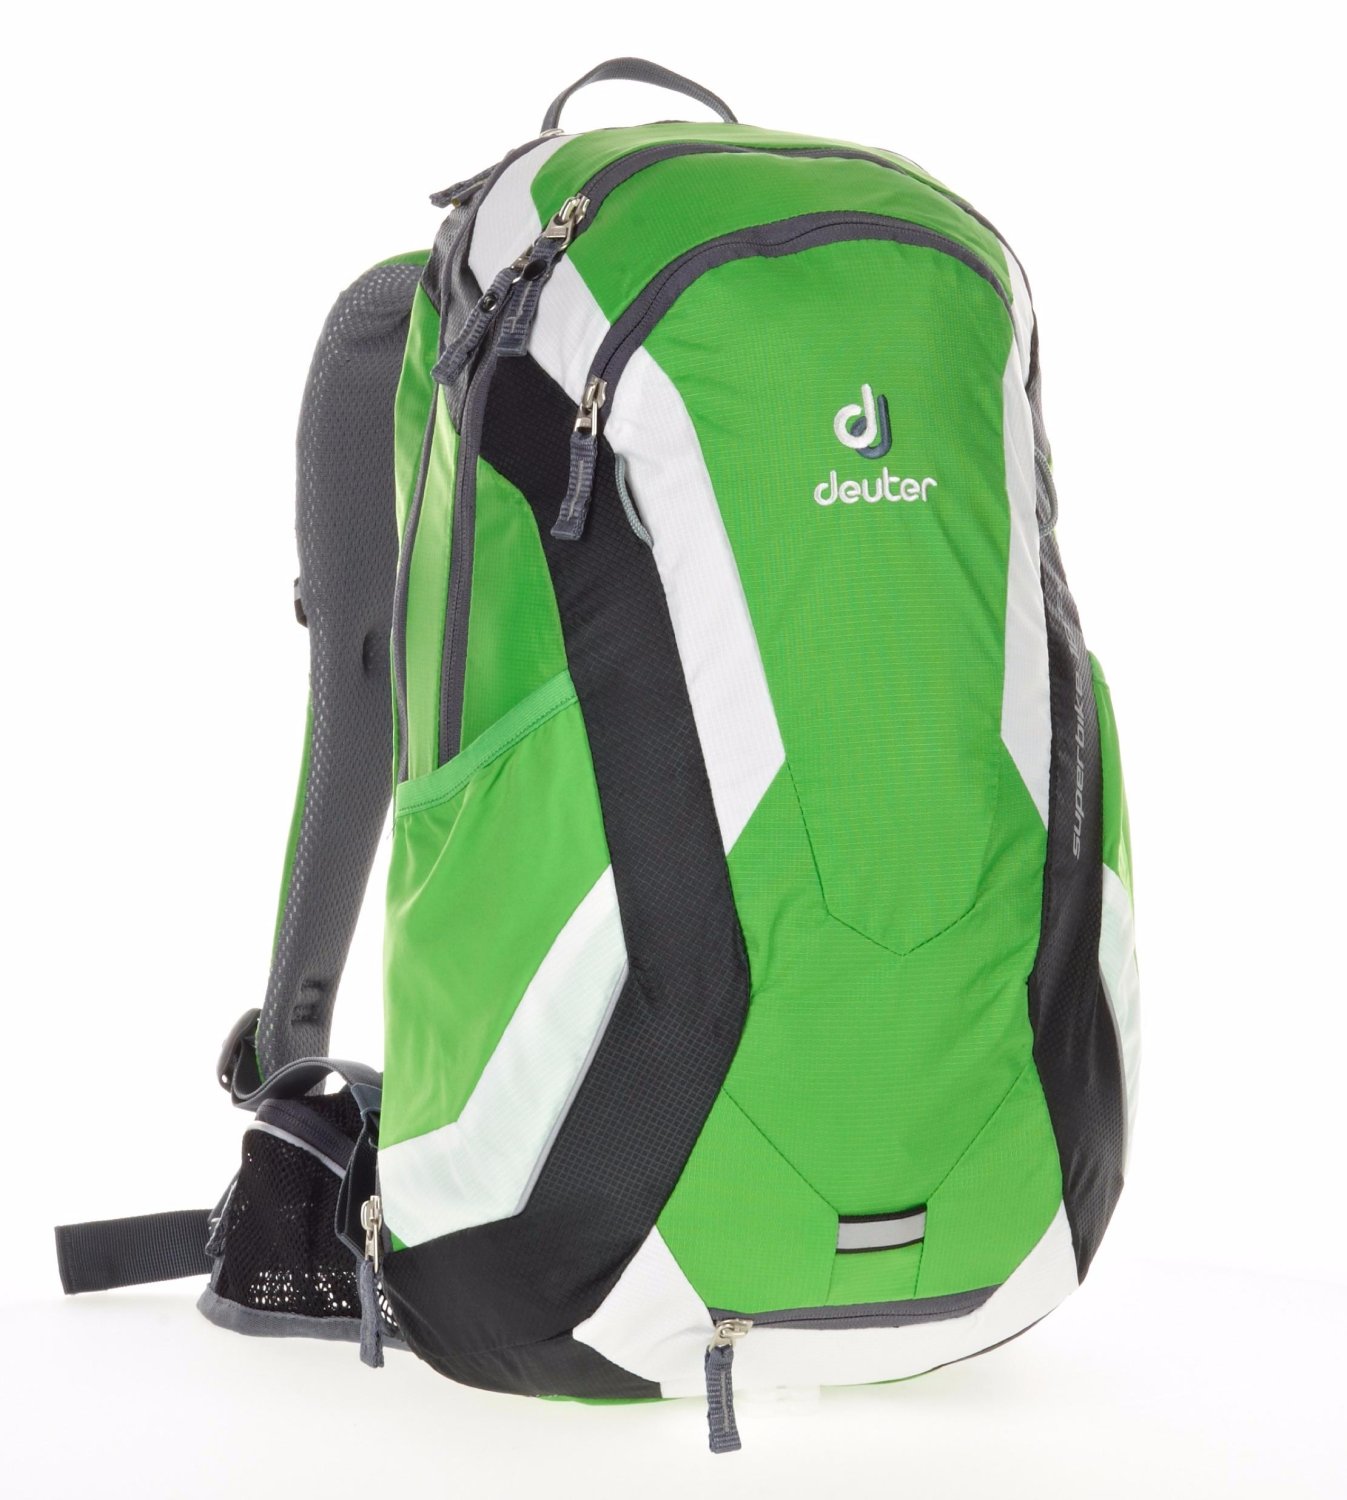 Велосипедный рюкзак Deuter Superbike 18 EXP, с чехлом, 51x31x16, 18+4 л, зеленый, 32114_2704 рюкзак deuter cross air 20 exp отделение для влажной одежды 47х34х20 18 4 л зеленый 32094 2704